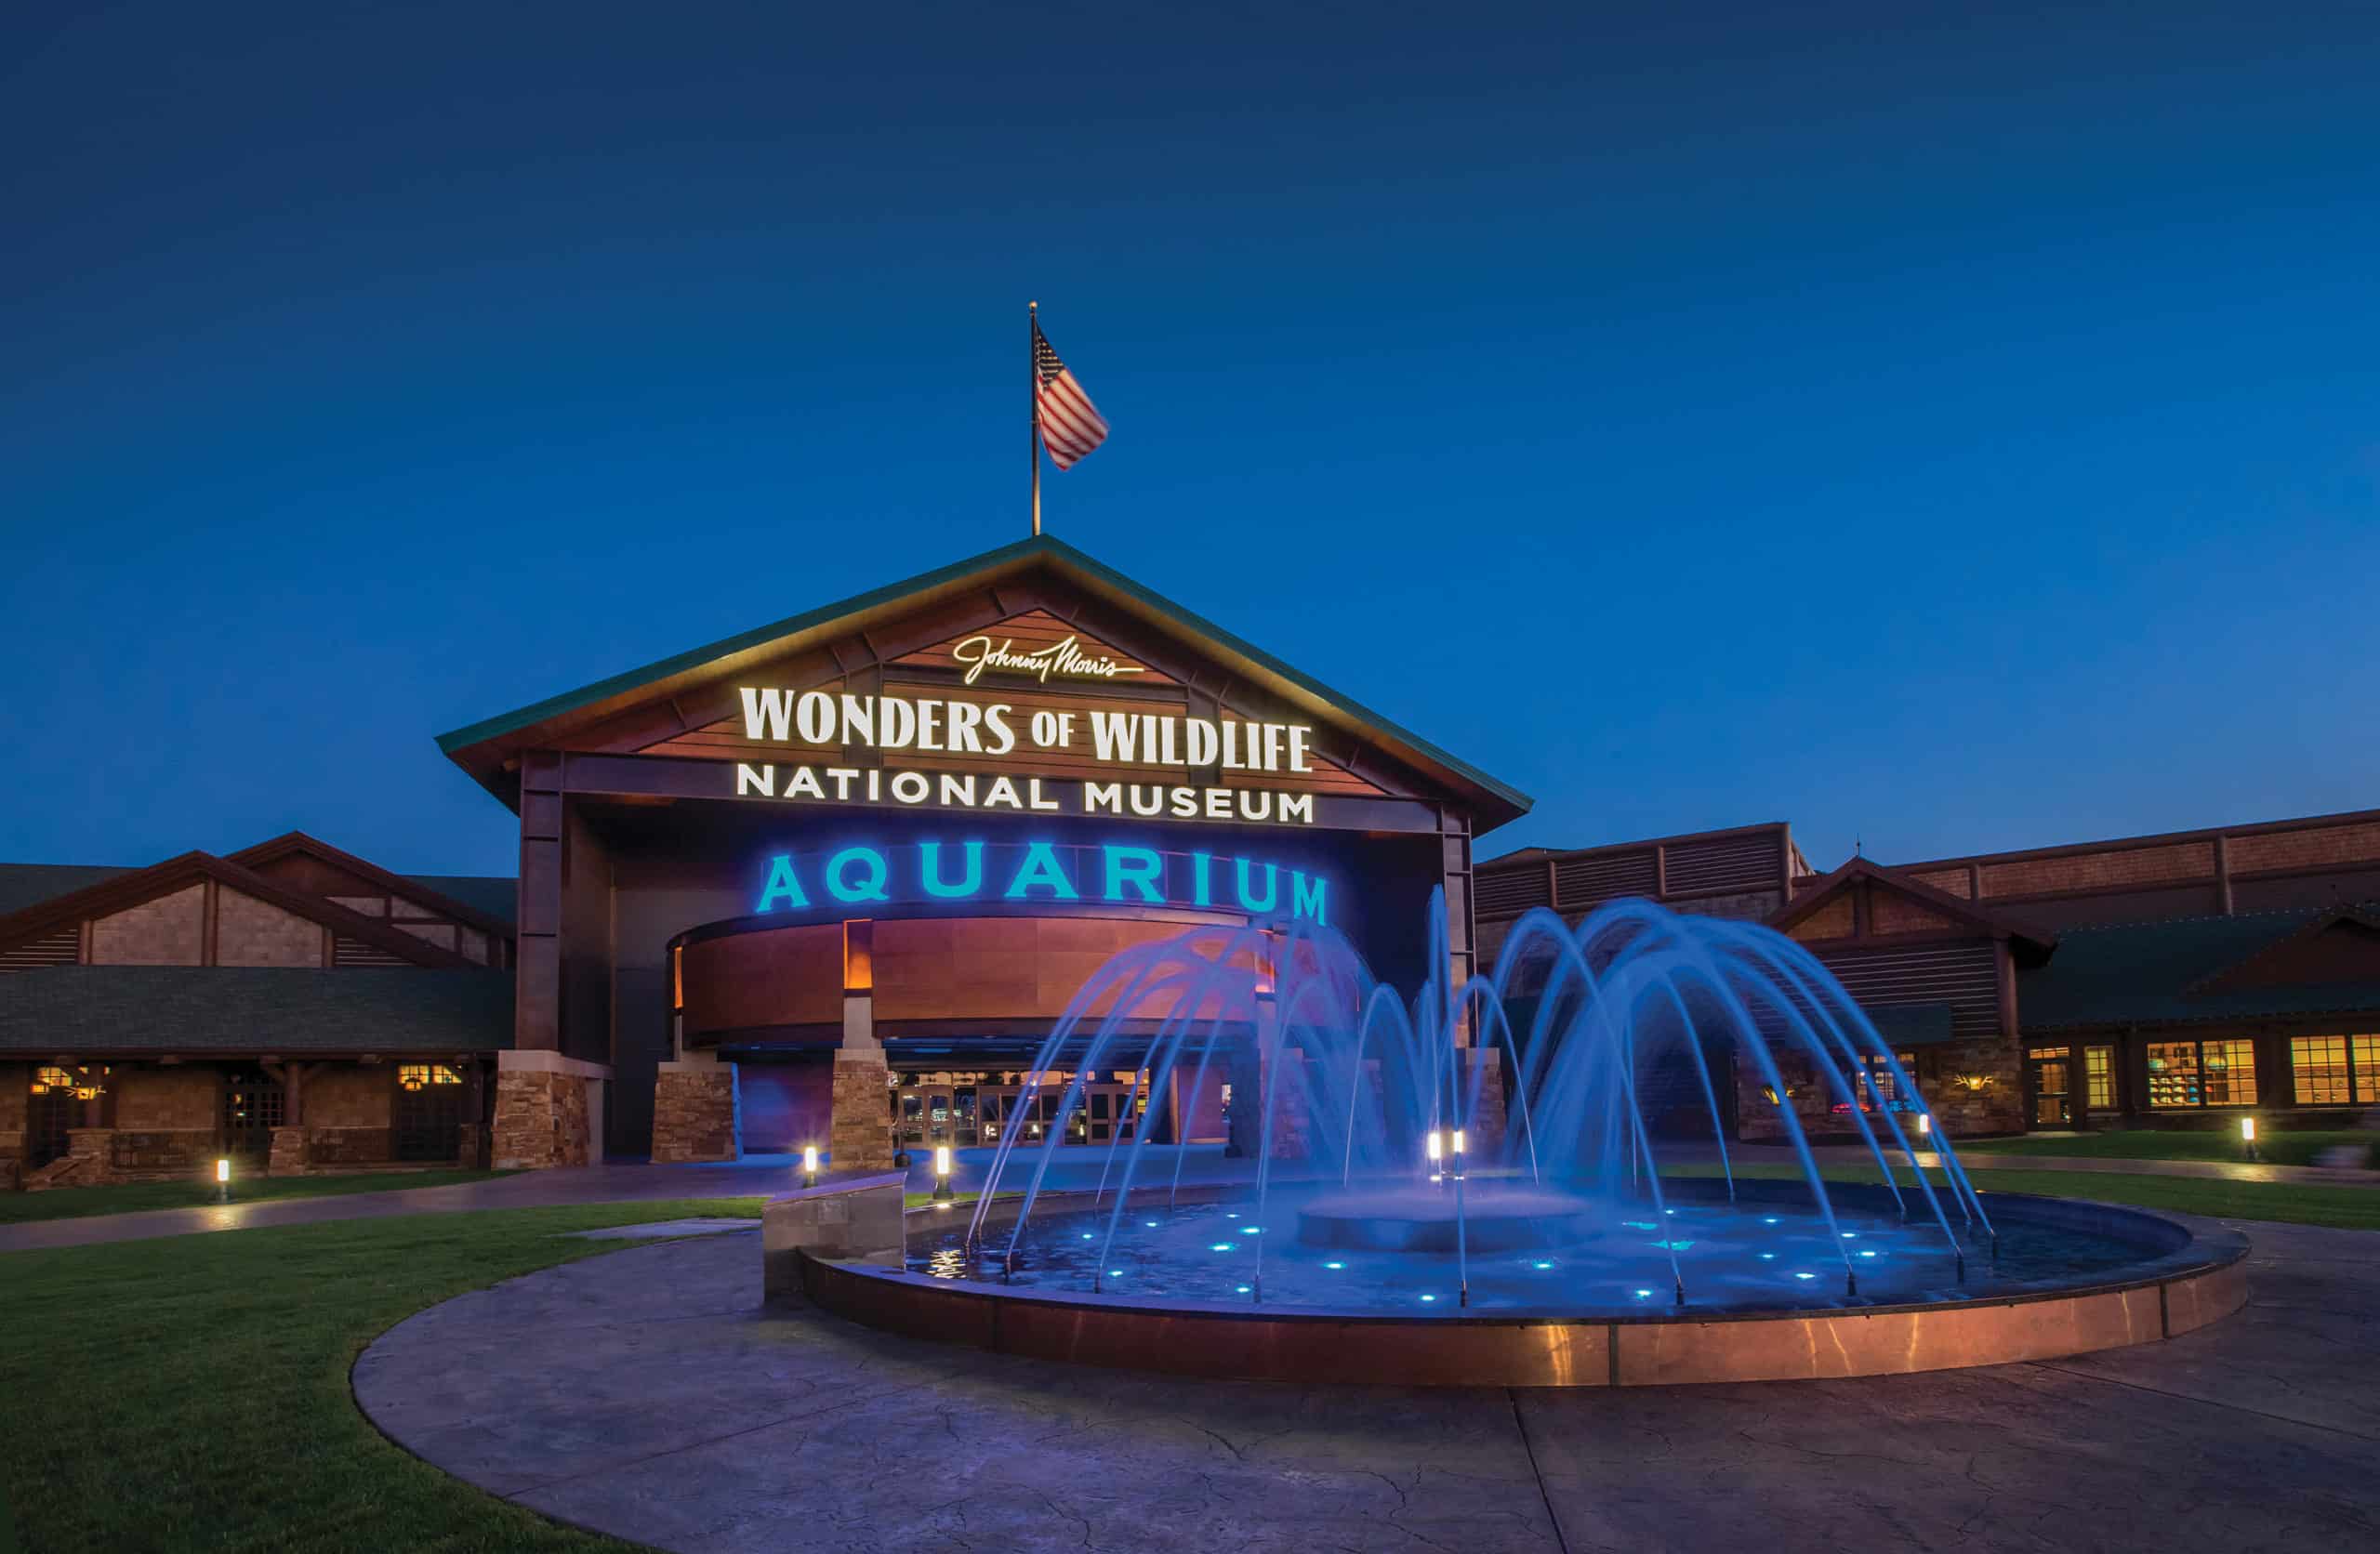 It's official, America's Best Aquarium is in Springfield, Missouri